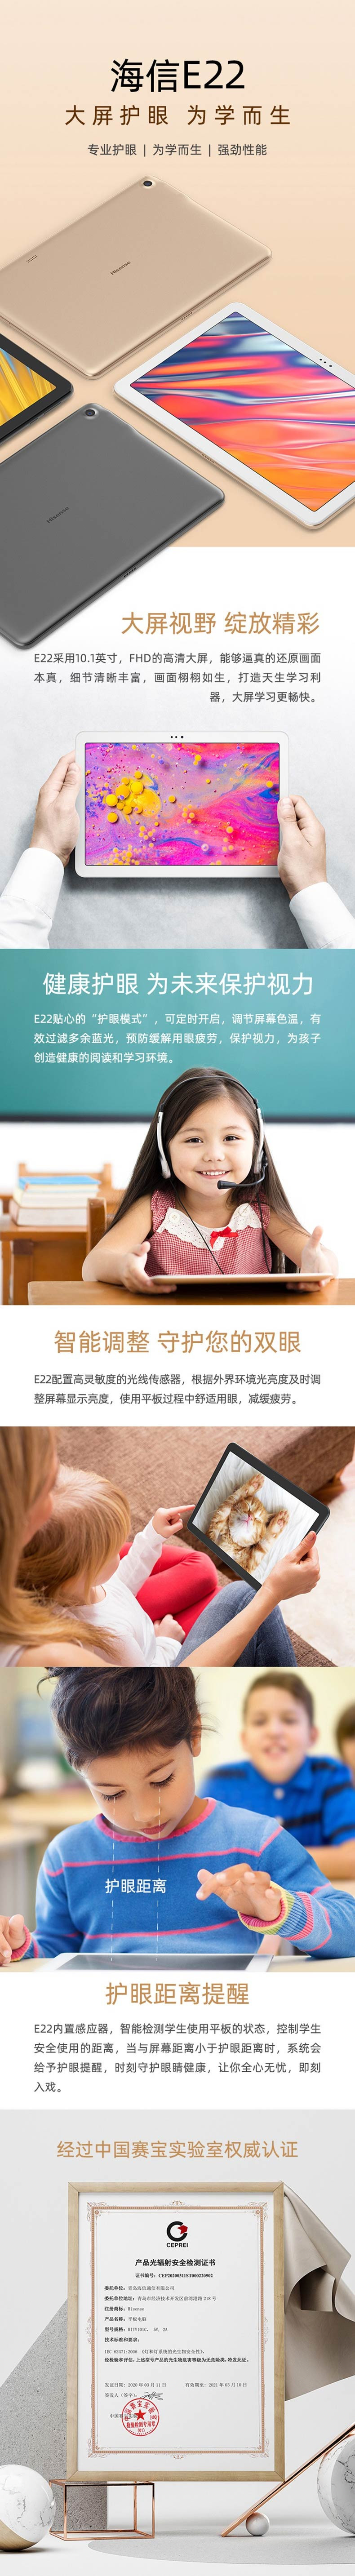 海信/Hisense E22 10.1英寸平板电脑 4+64G内存 高清大屏 儿童学习平板电脑